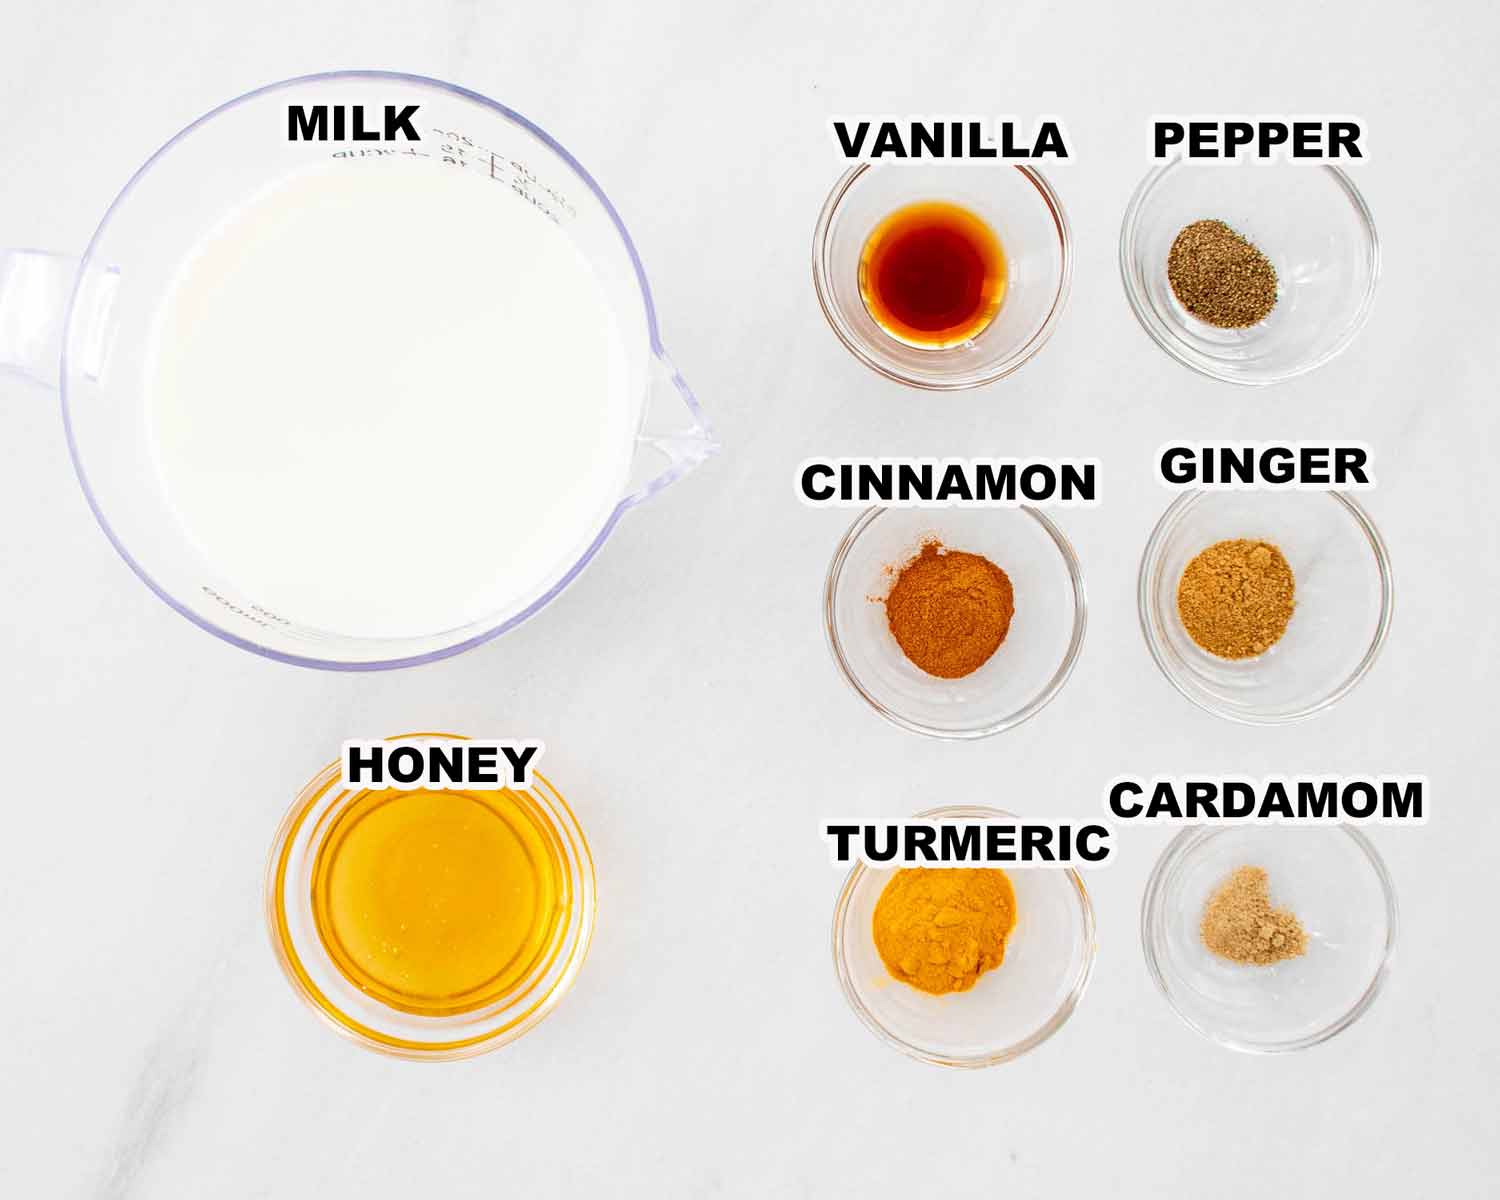 ingredients needed to make turmeric latte (golden milk).